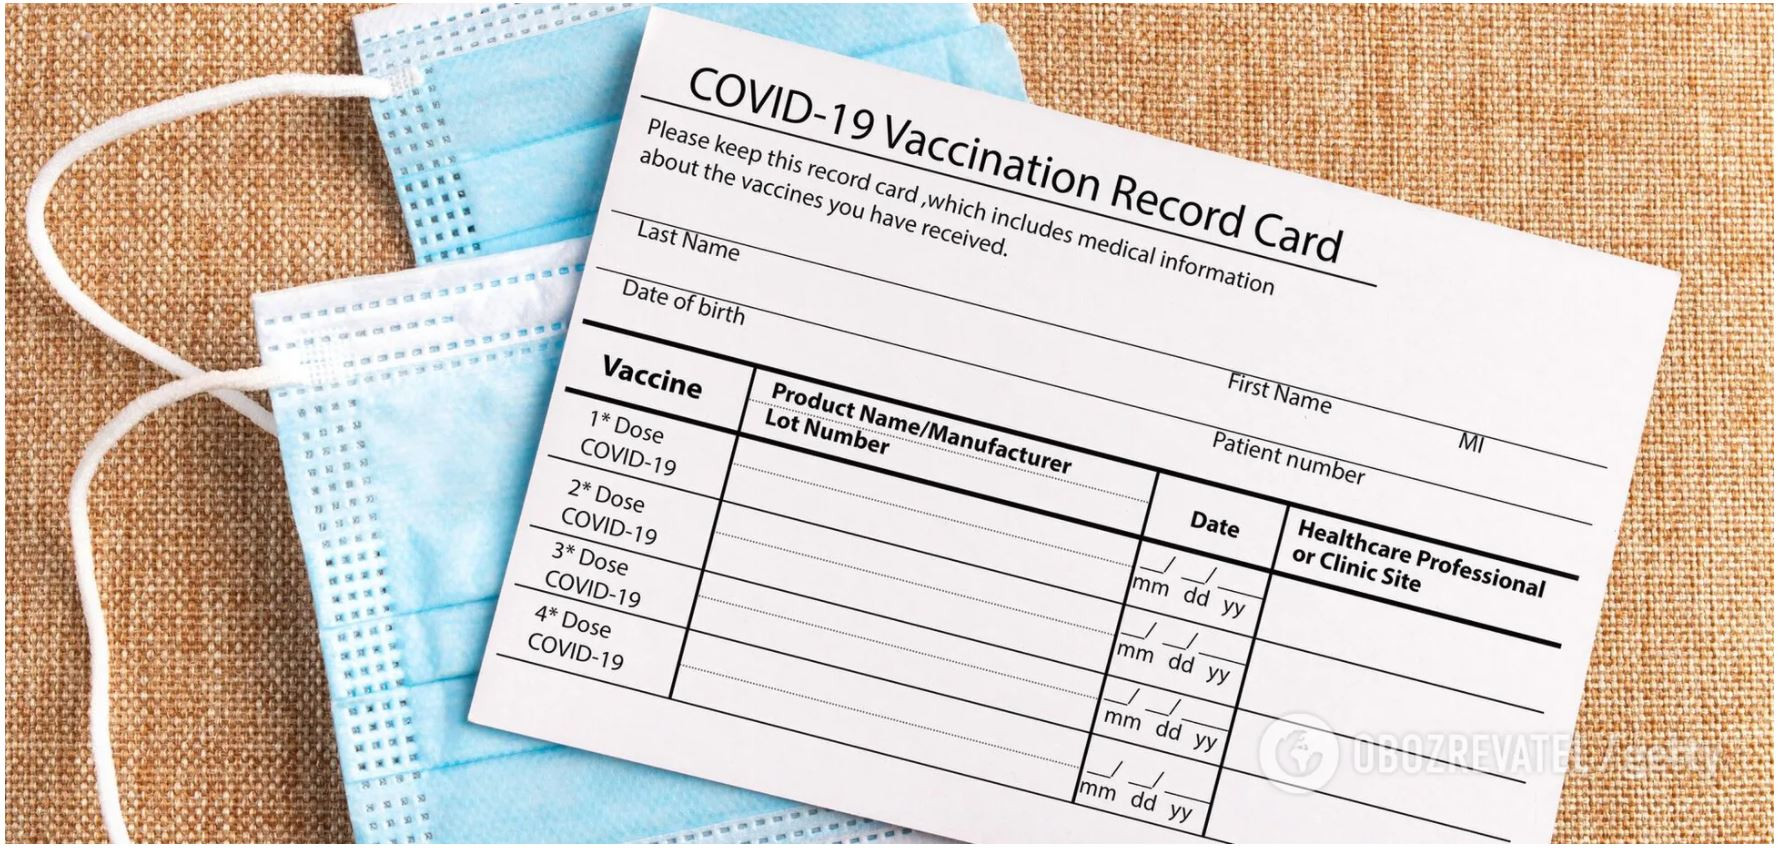 Документ буде містити персональні дані пацієнта: ім'я та прізвище; назва вакцини; дати, коли зроблені щеплення